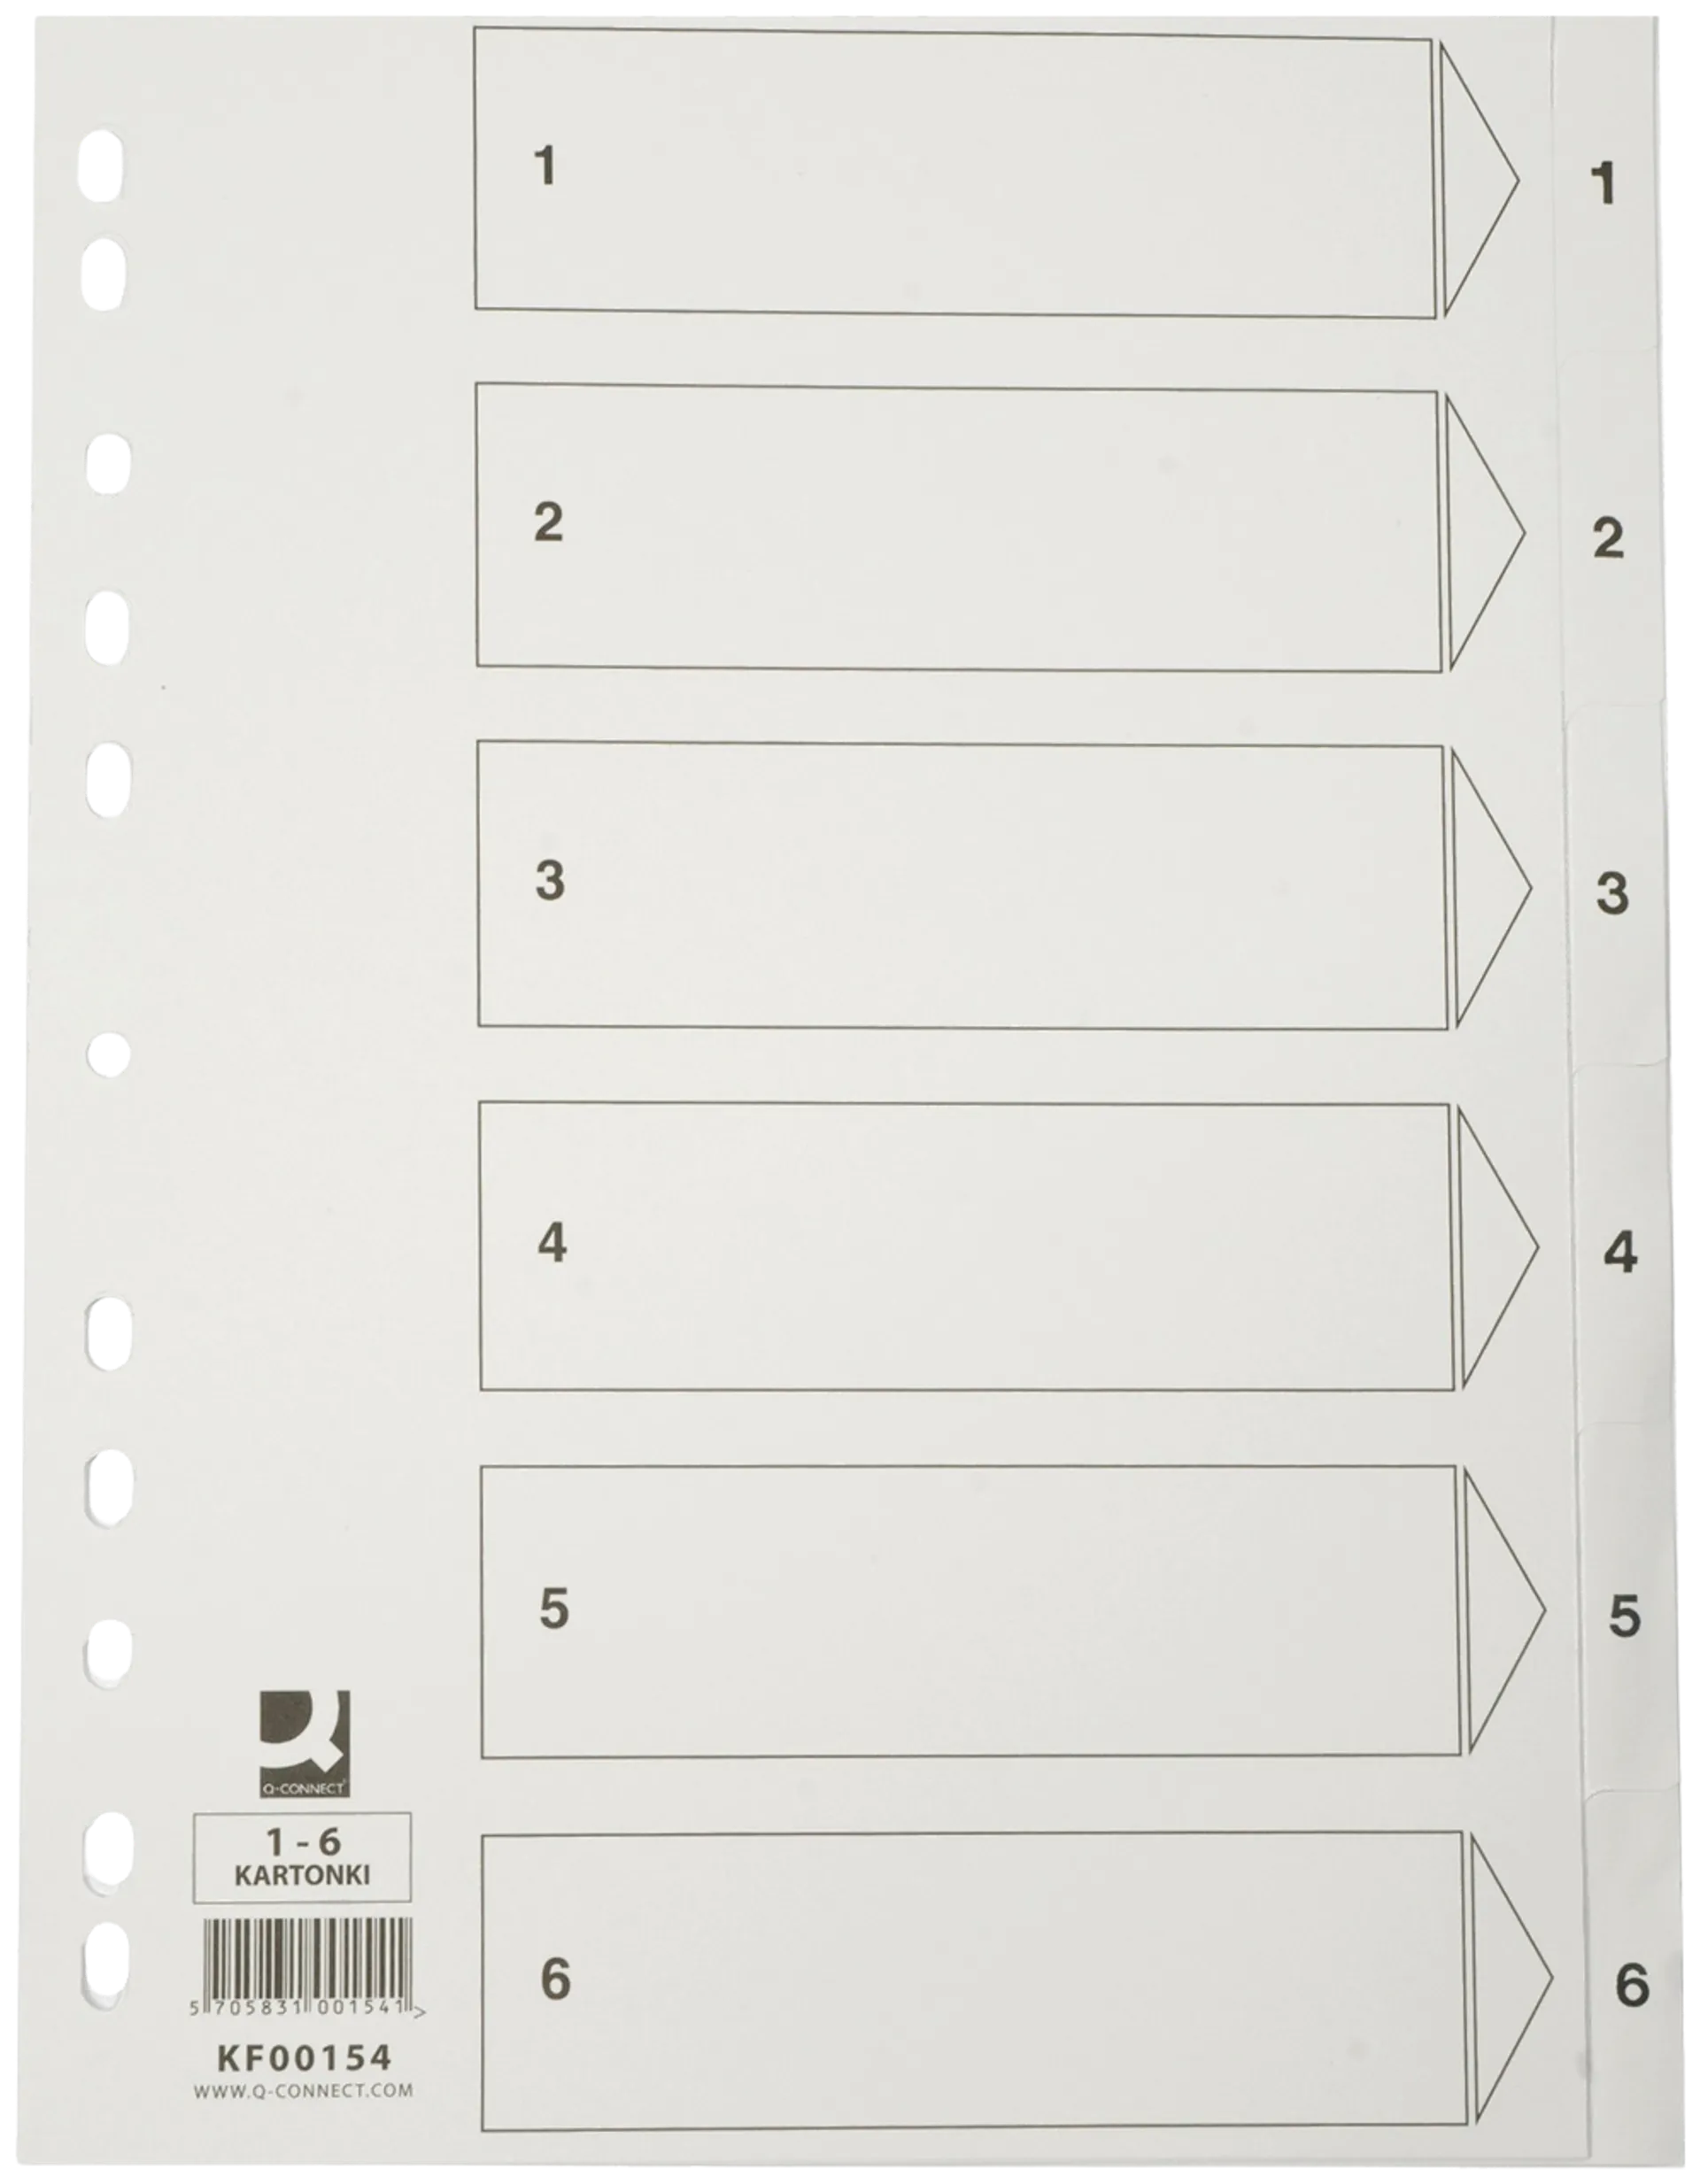 Q-Connect hakemisto A4 1-6 kartonki valkoinen